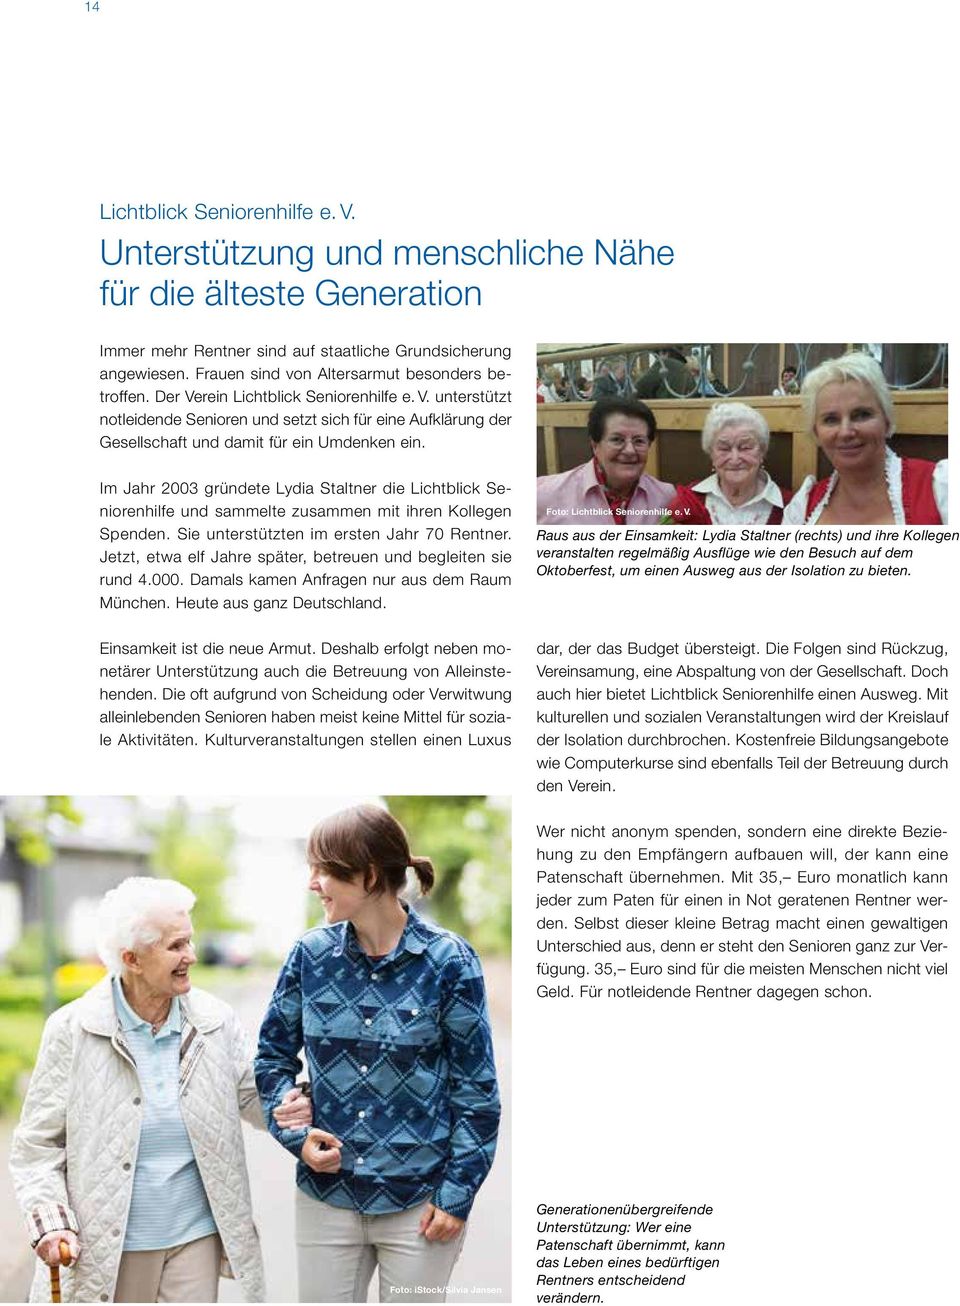 Im Jahr 2003 gründete Lydia Staltner die Lichtblick Seniorenhilfe und sammelte zusammen mit ihren Kollegen Spenden. Sie unterstützten im ersten Jahr 70 Rentner.